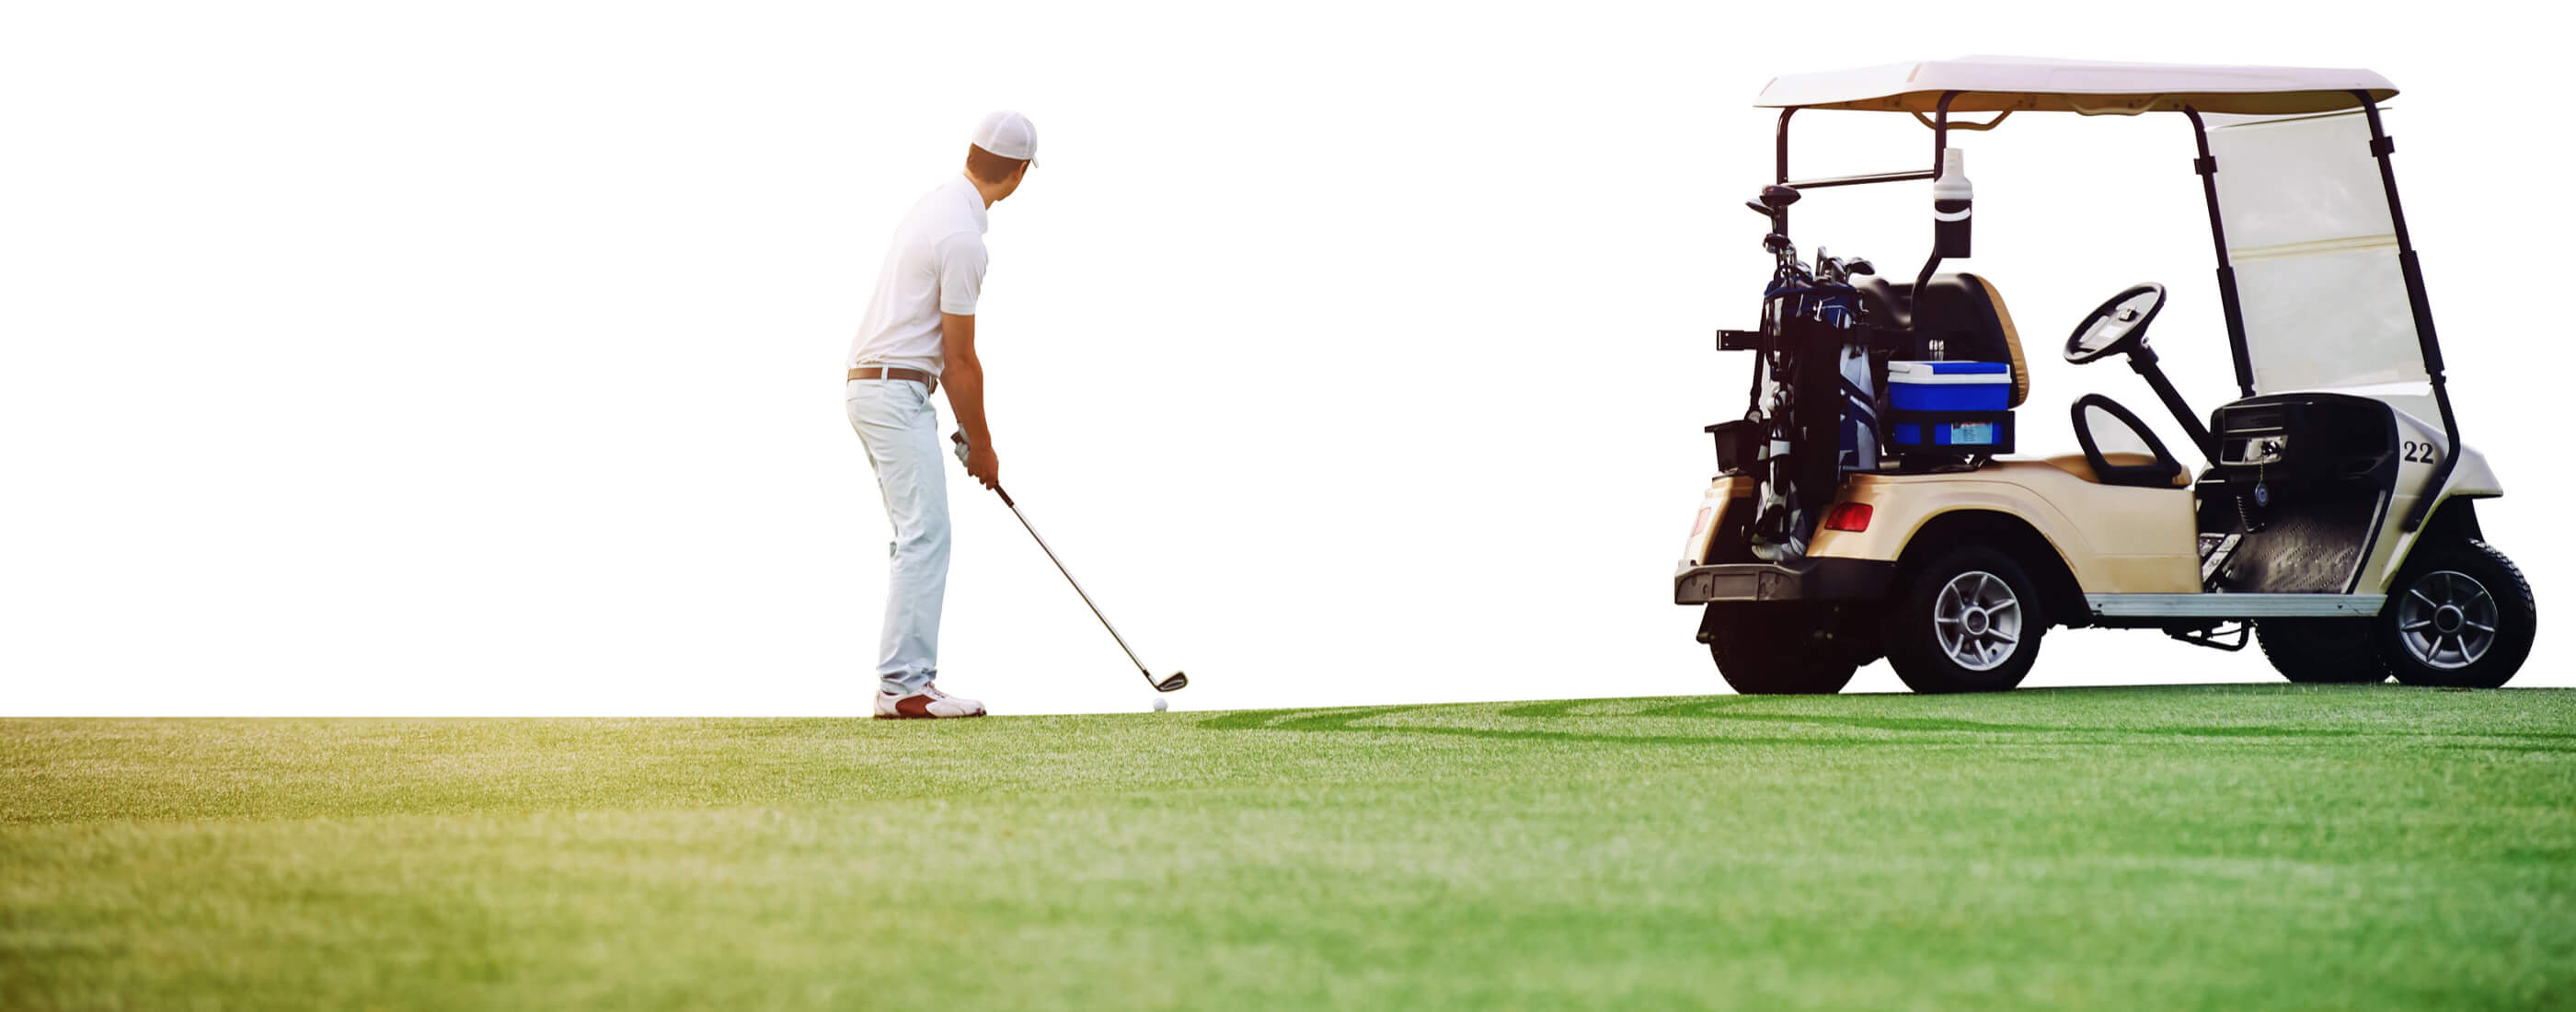 golfer and golf cart